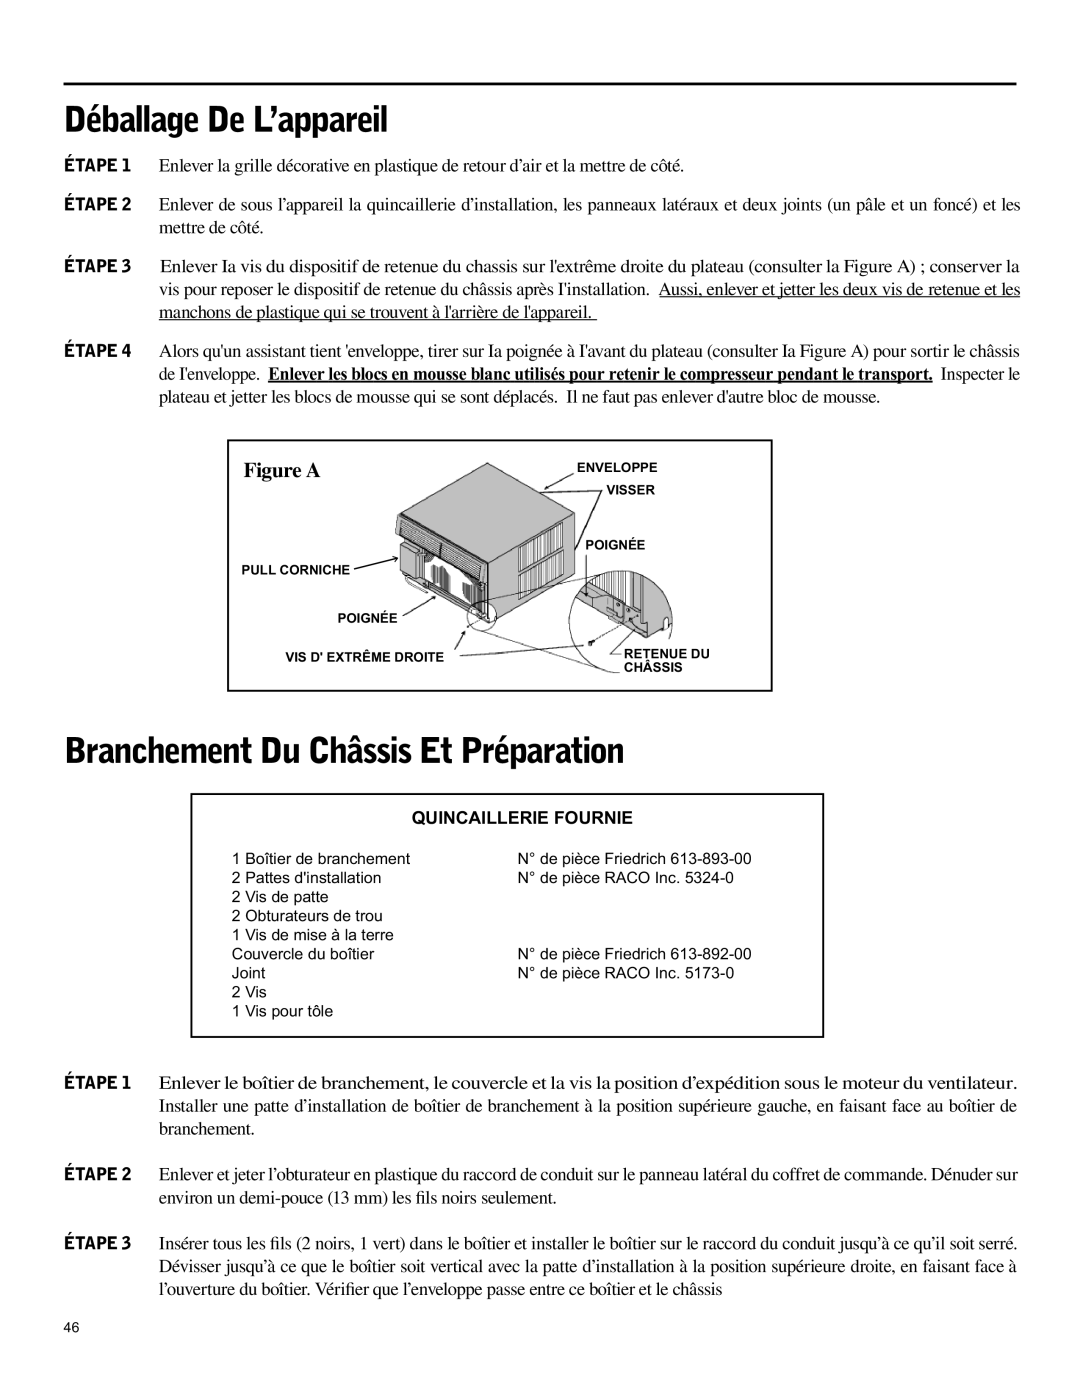 Friedrich SH15 operation manual Déballage De L’appareil, Branchement Du Châssis Et Préparation, Quincaillerie Fournie 